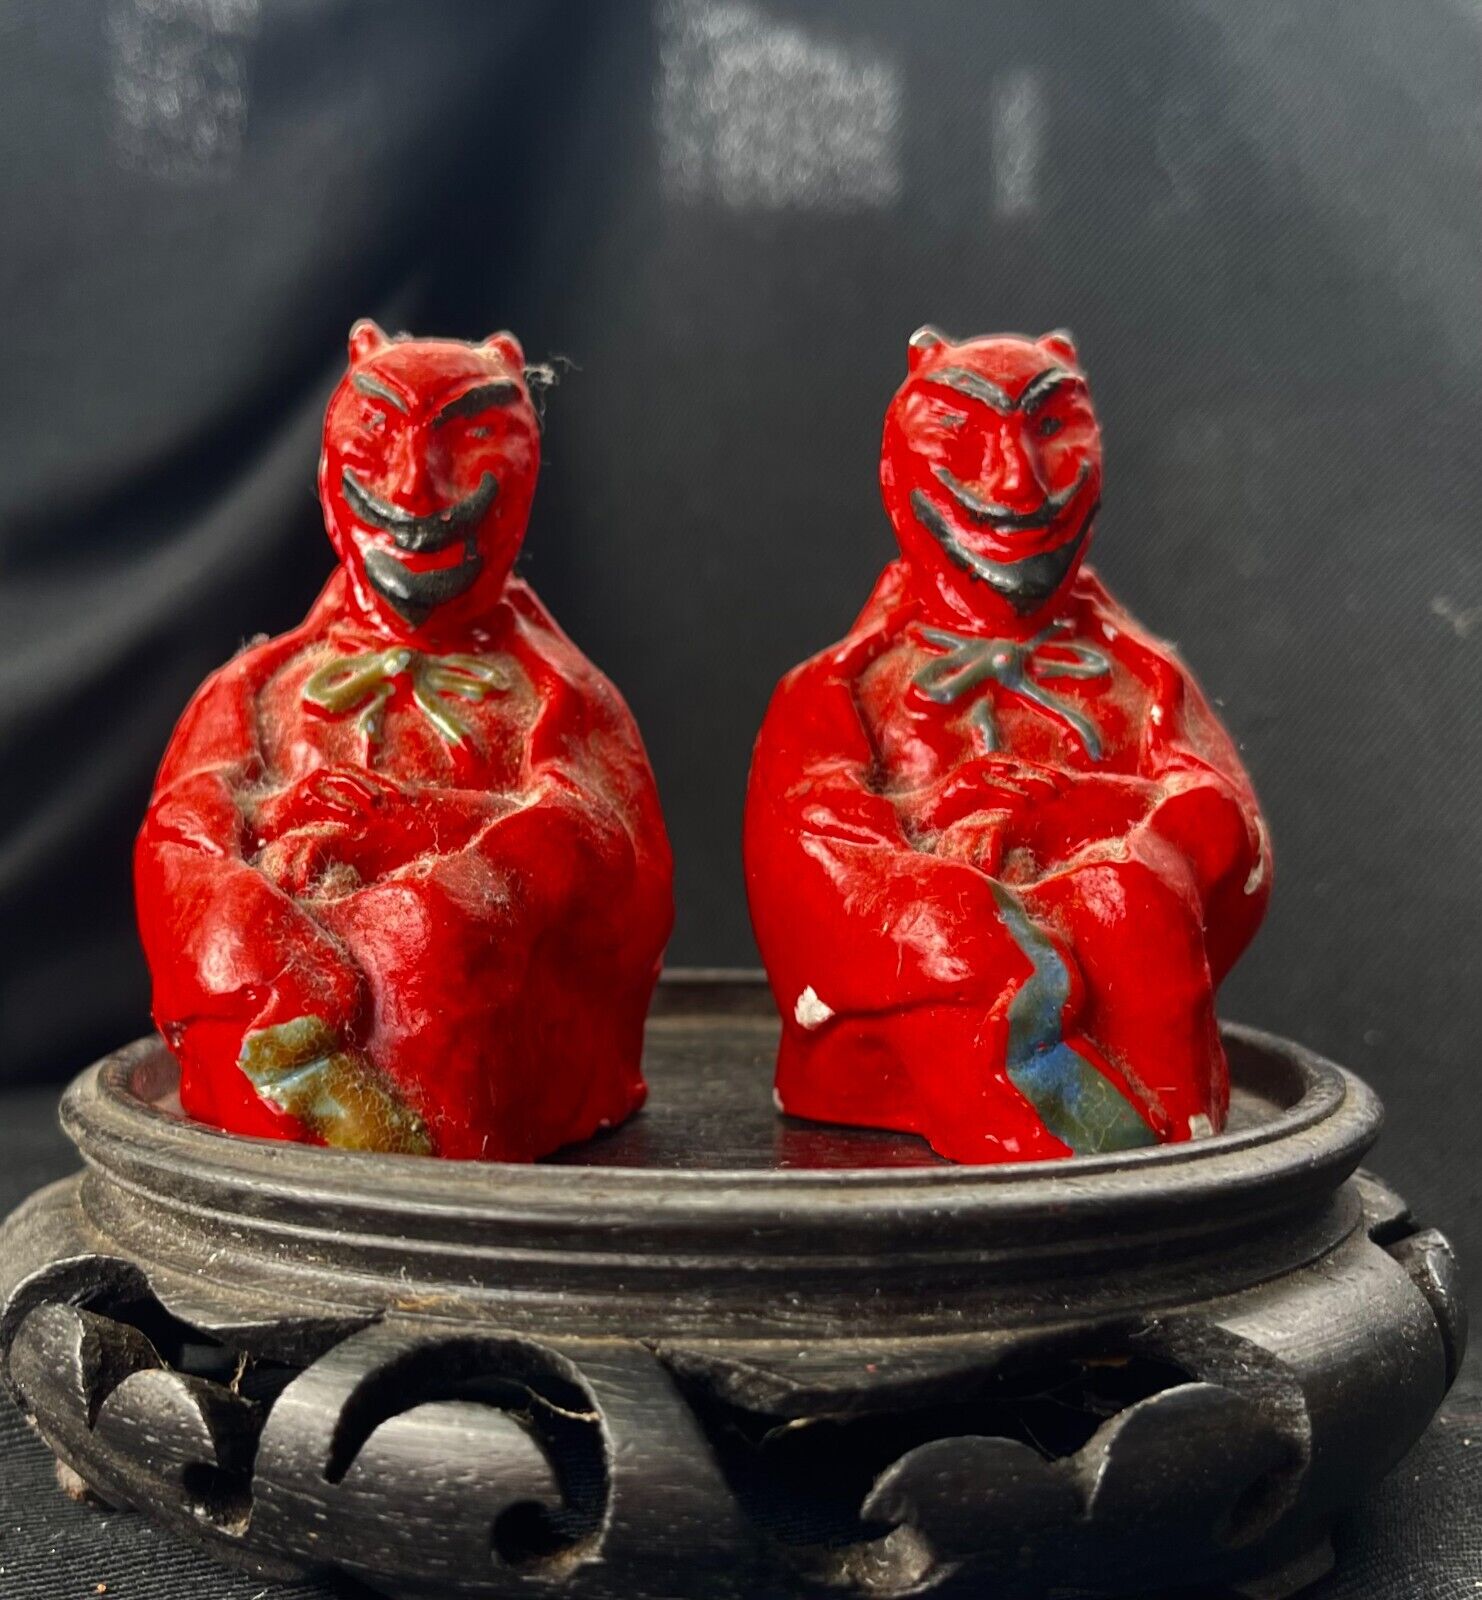 DEVIL SATAN SALT & PEPPER SHAKER Vintage RED  CERAMIC Set of Two Figurines